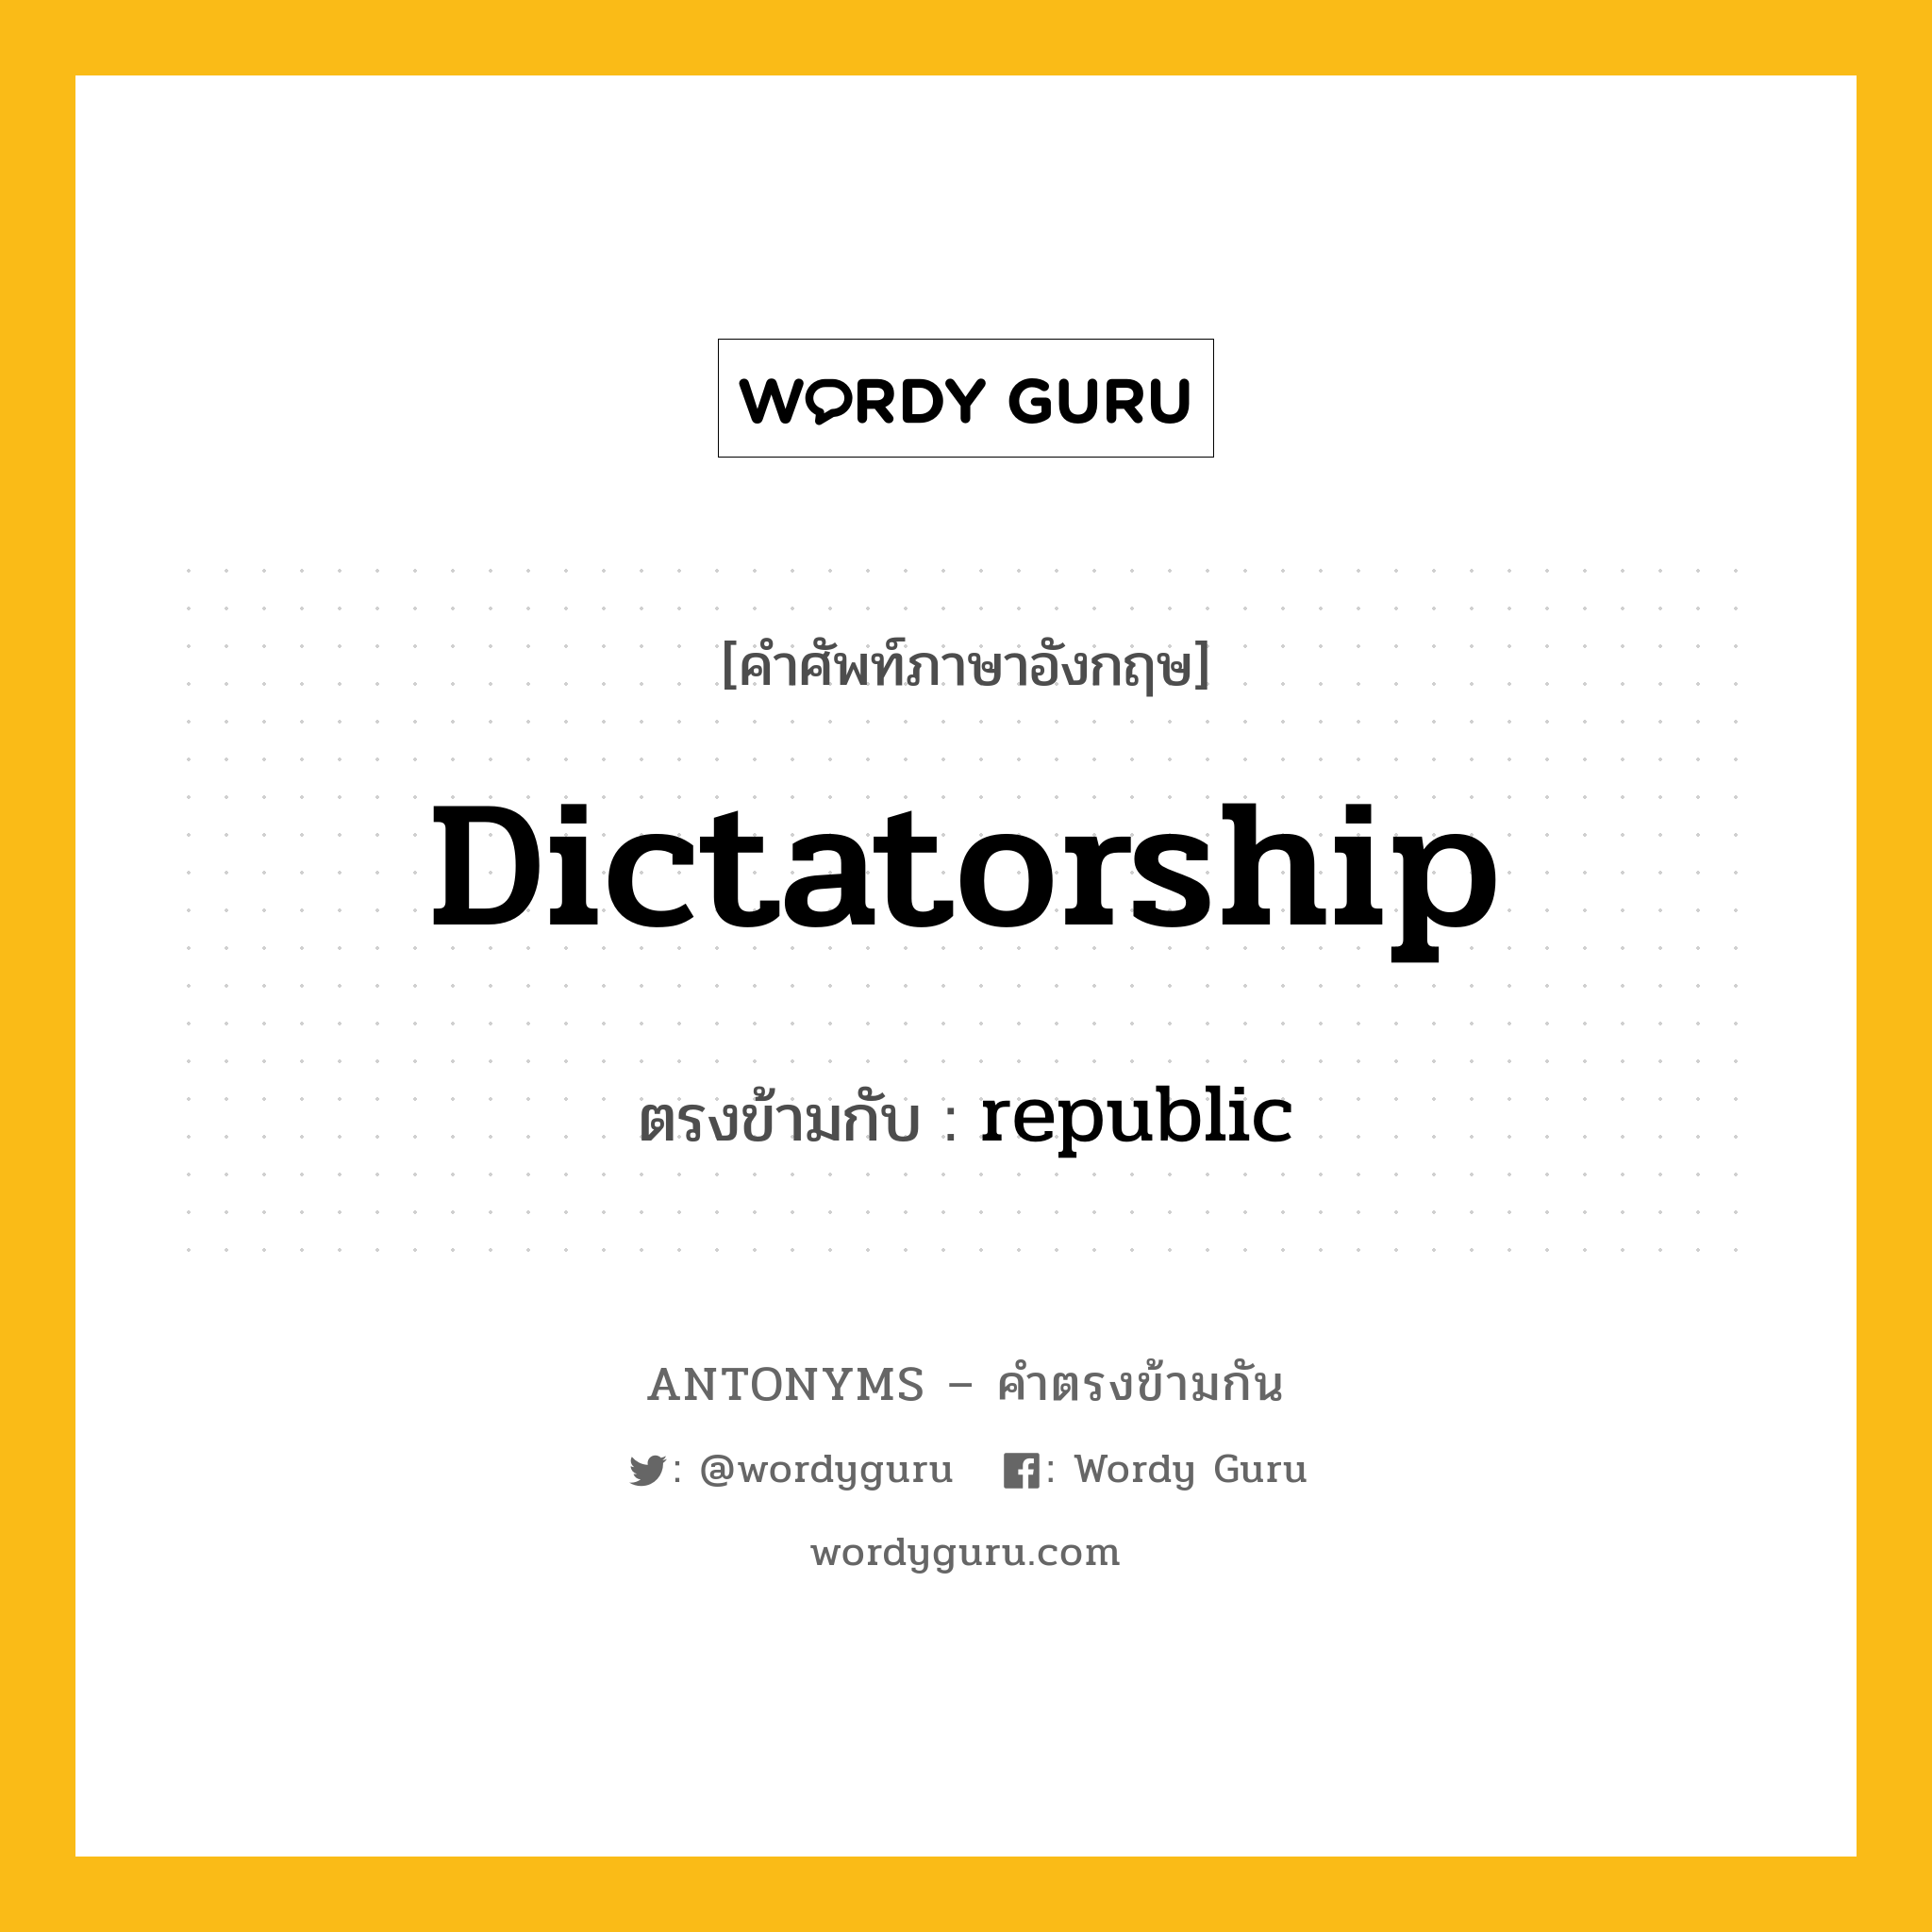 dictatorship เป็นคำตรงข้ามกับคำไหนบ้าง?, คำศัพท์ภาษาอังกฤษ dictatorship ตรงข้ามกับ republic หมวด republic